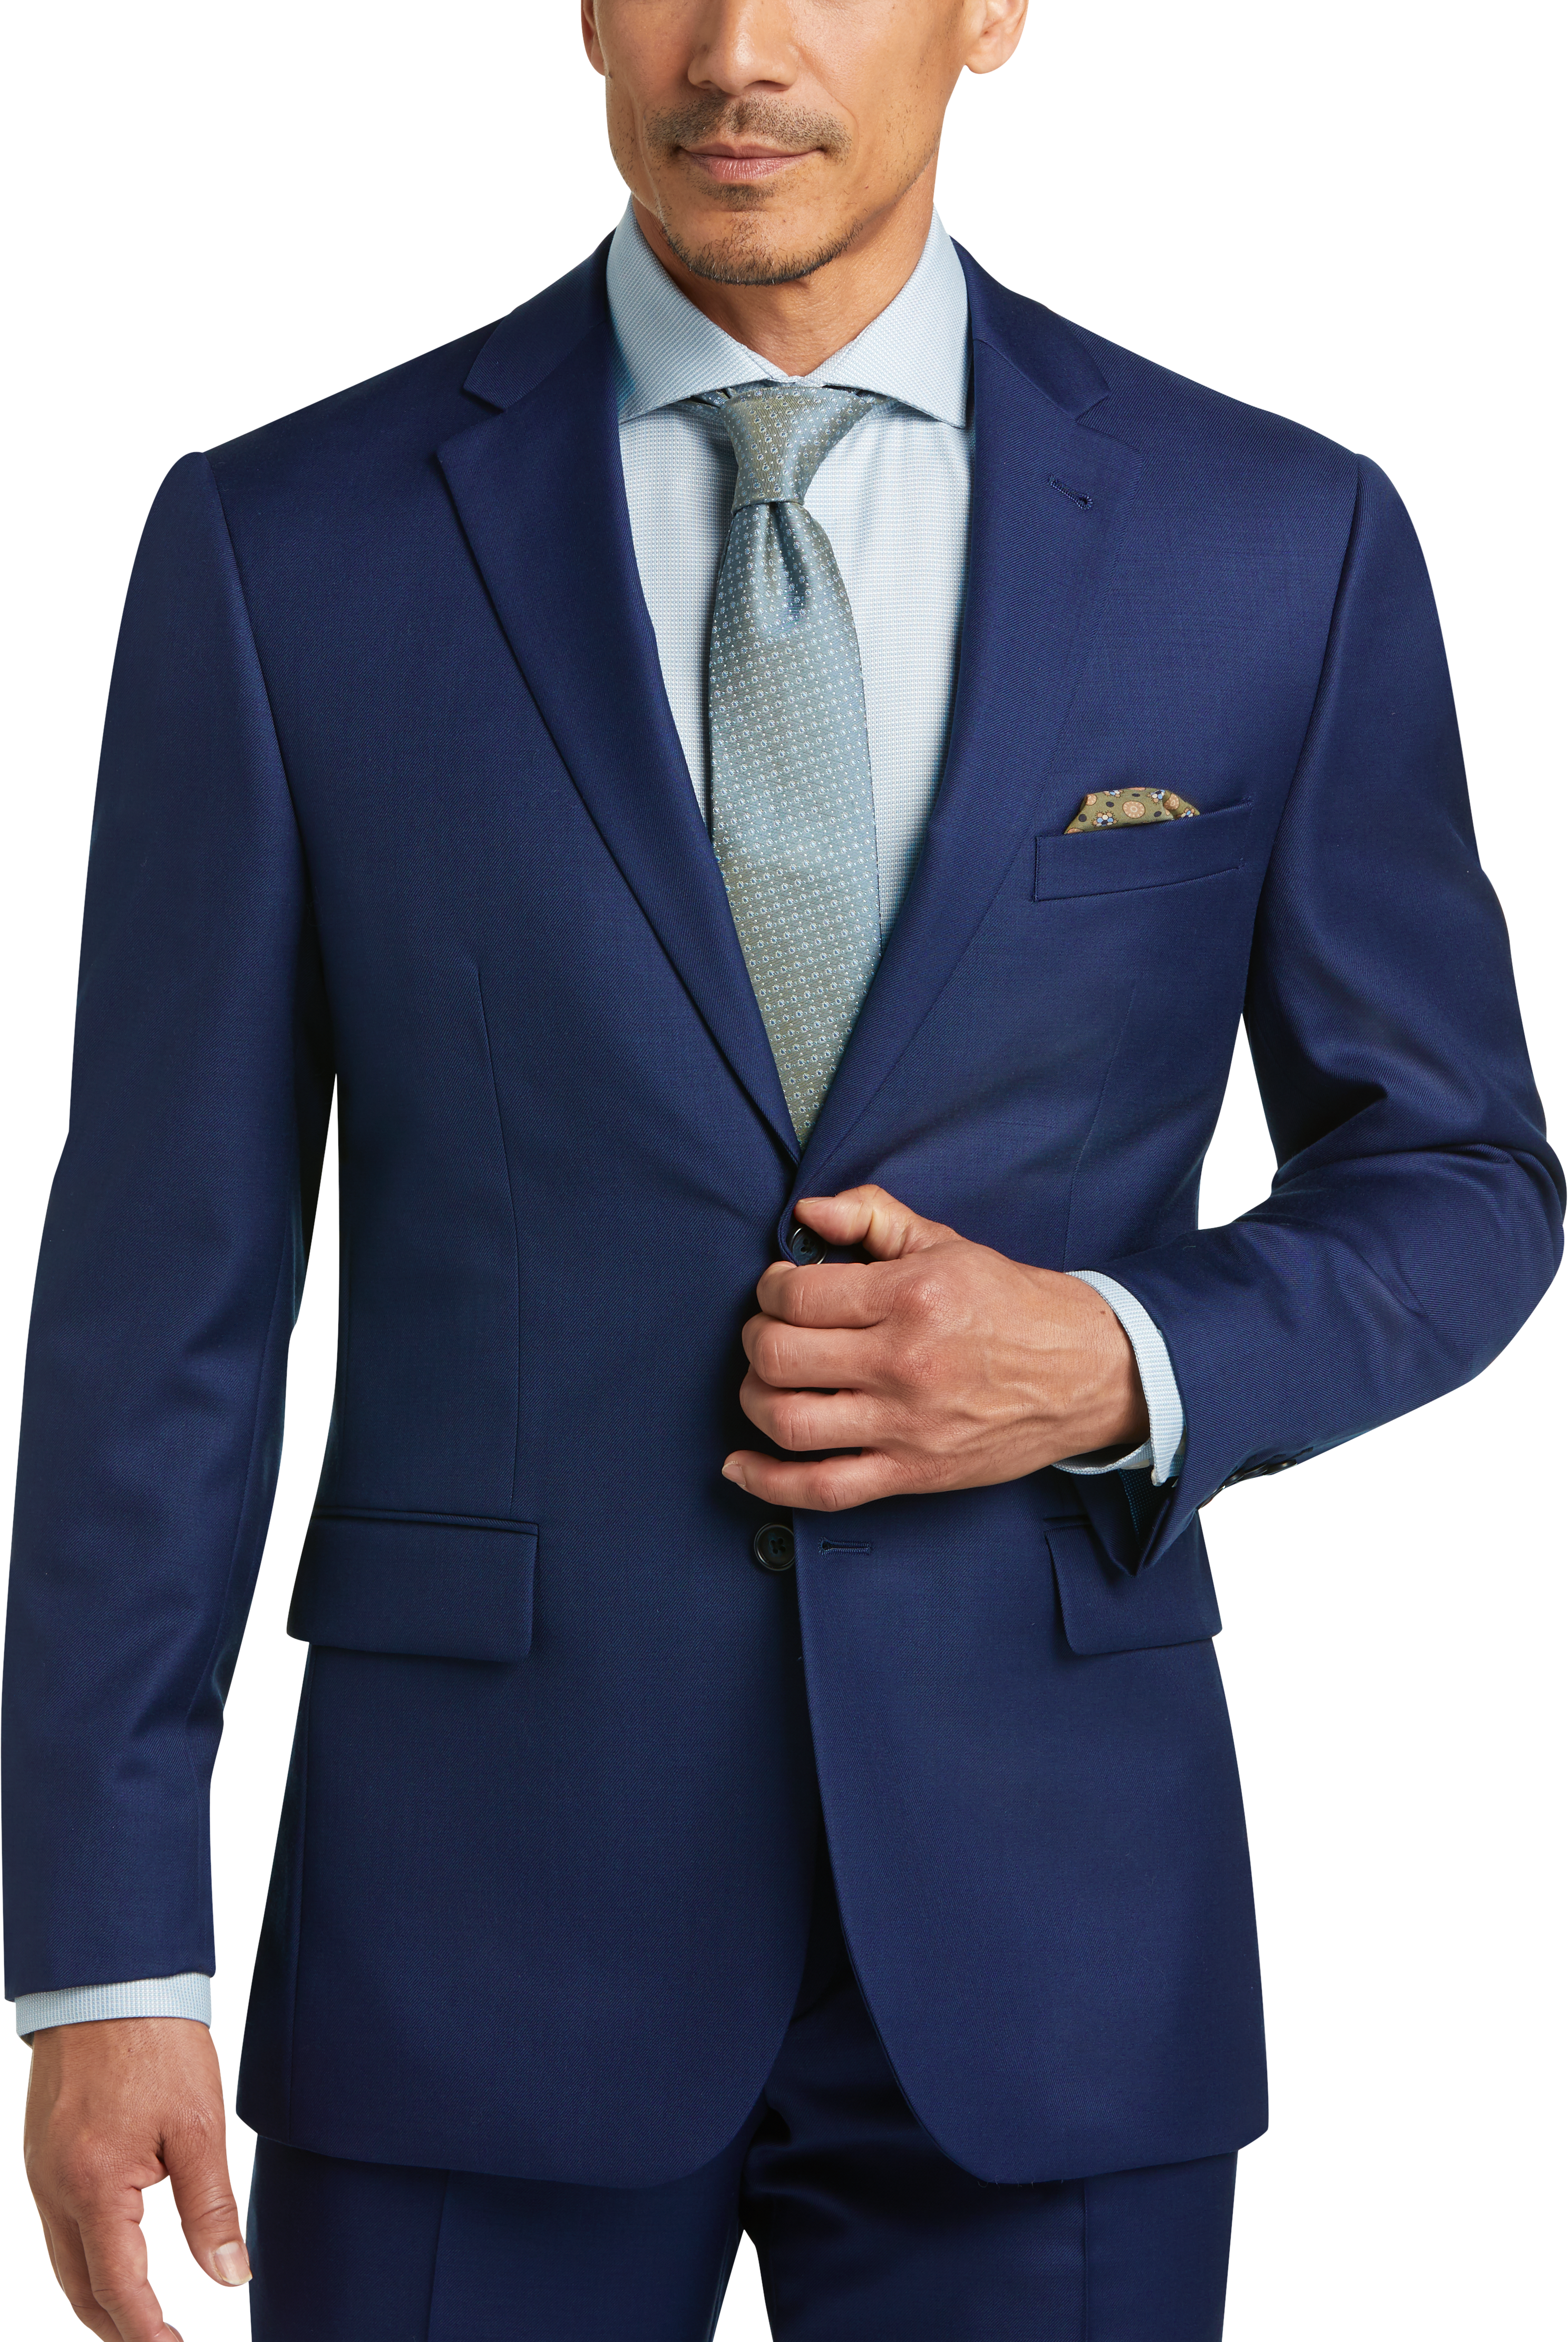 JOE Joseph Abboud Bright Blue Classic Fit Suit - Men's Suits | Men's ...